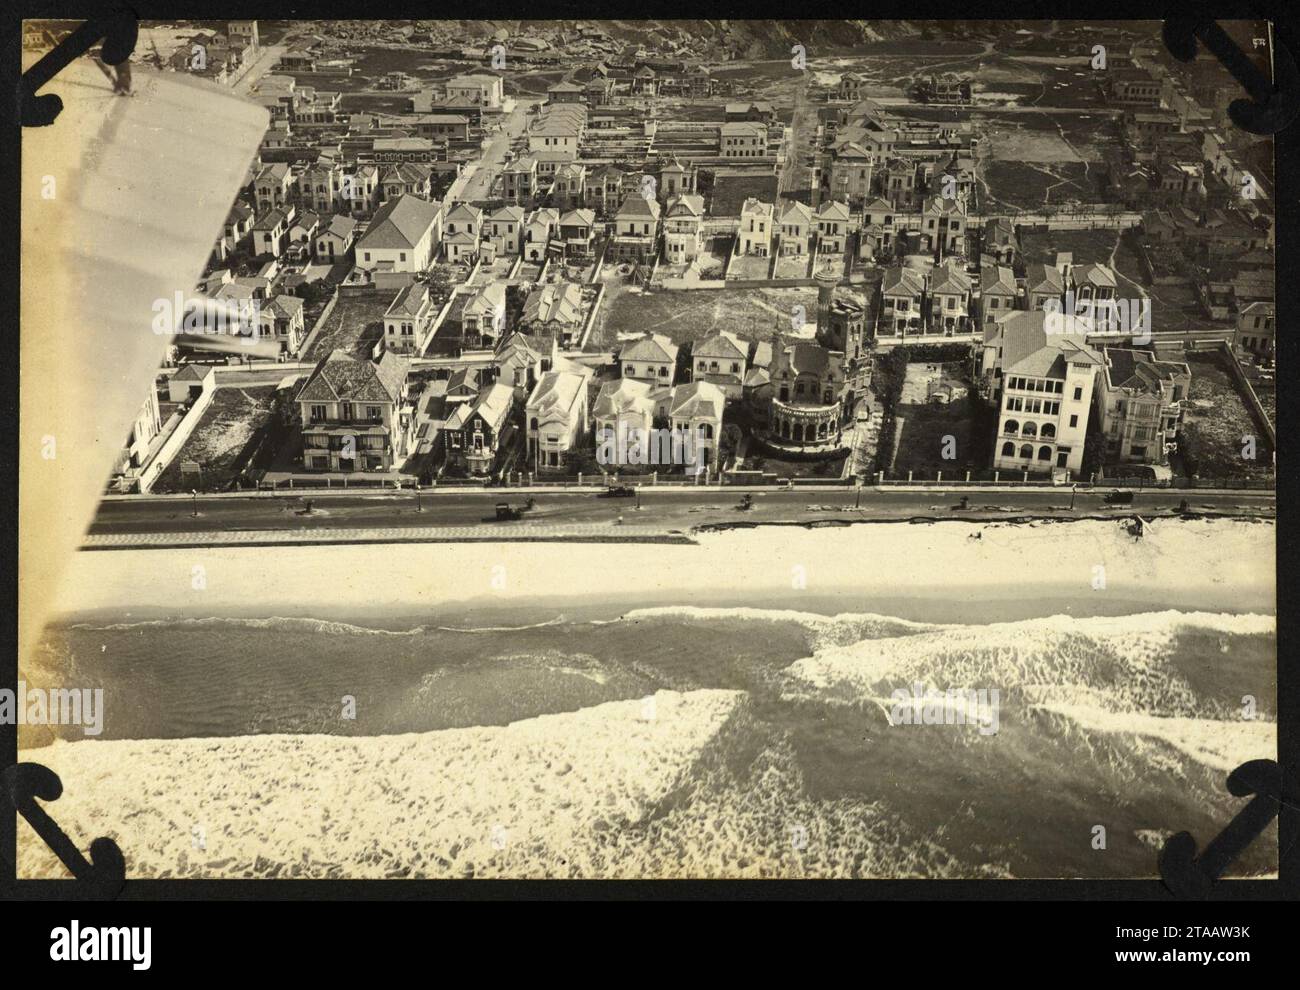 Vista aérea da praia de Copacabana, com uma parte do calçadão destruído pela ressaca (007ALA111). Foto Stock